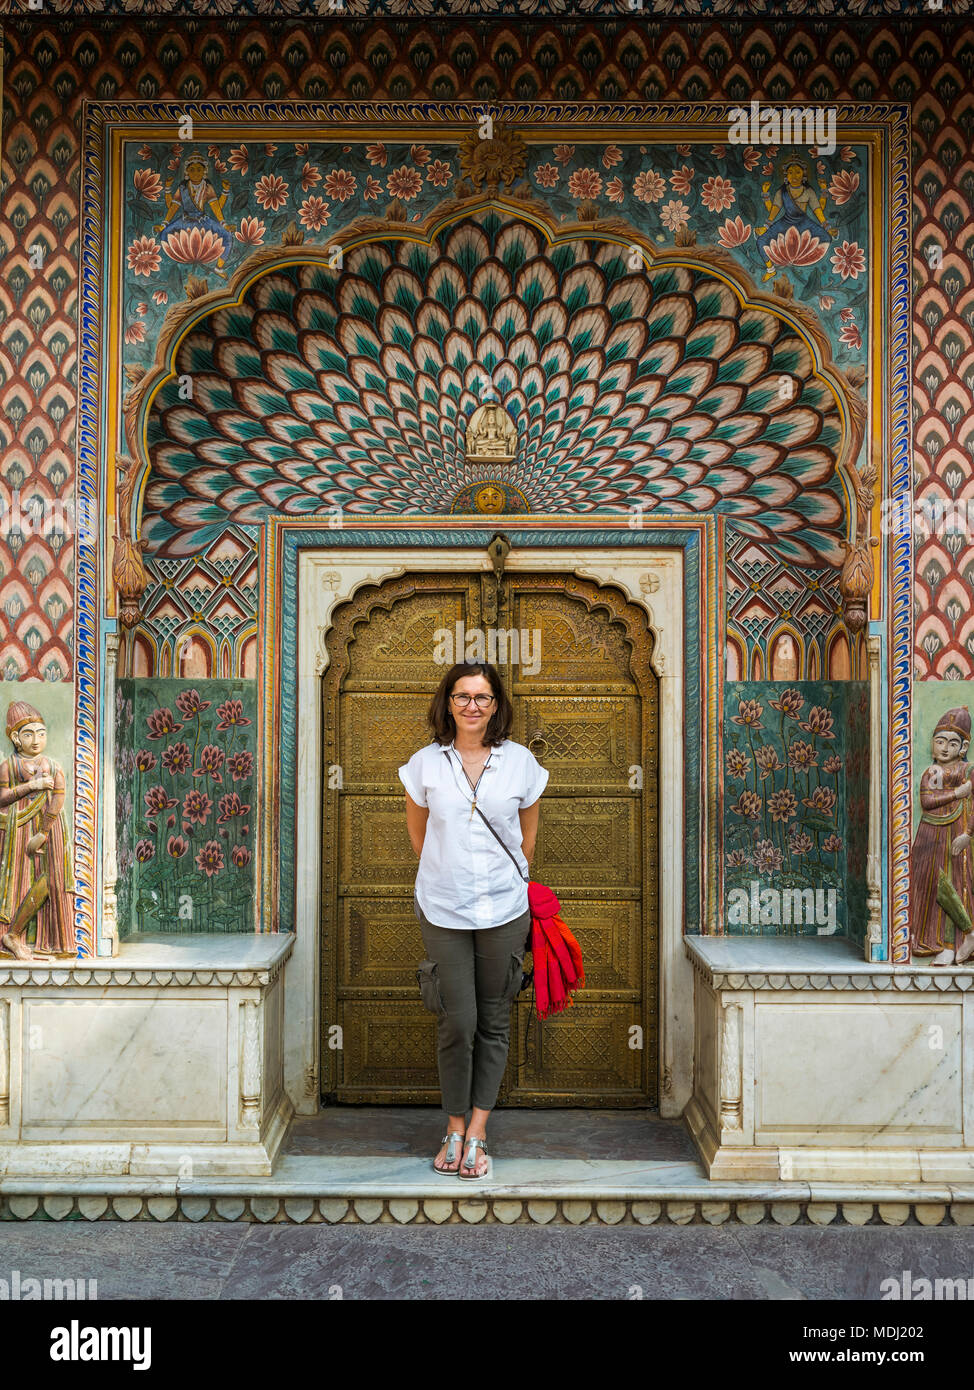 Tourisme Une femme se tient debout devant le paon Gate, City Palace, Jaipur, Rajasthan, Inde Banque D'Images